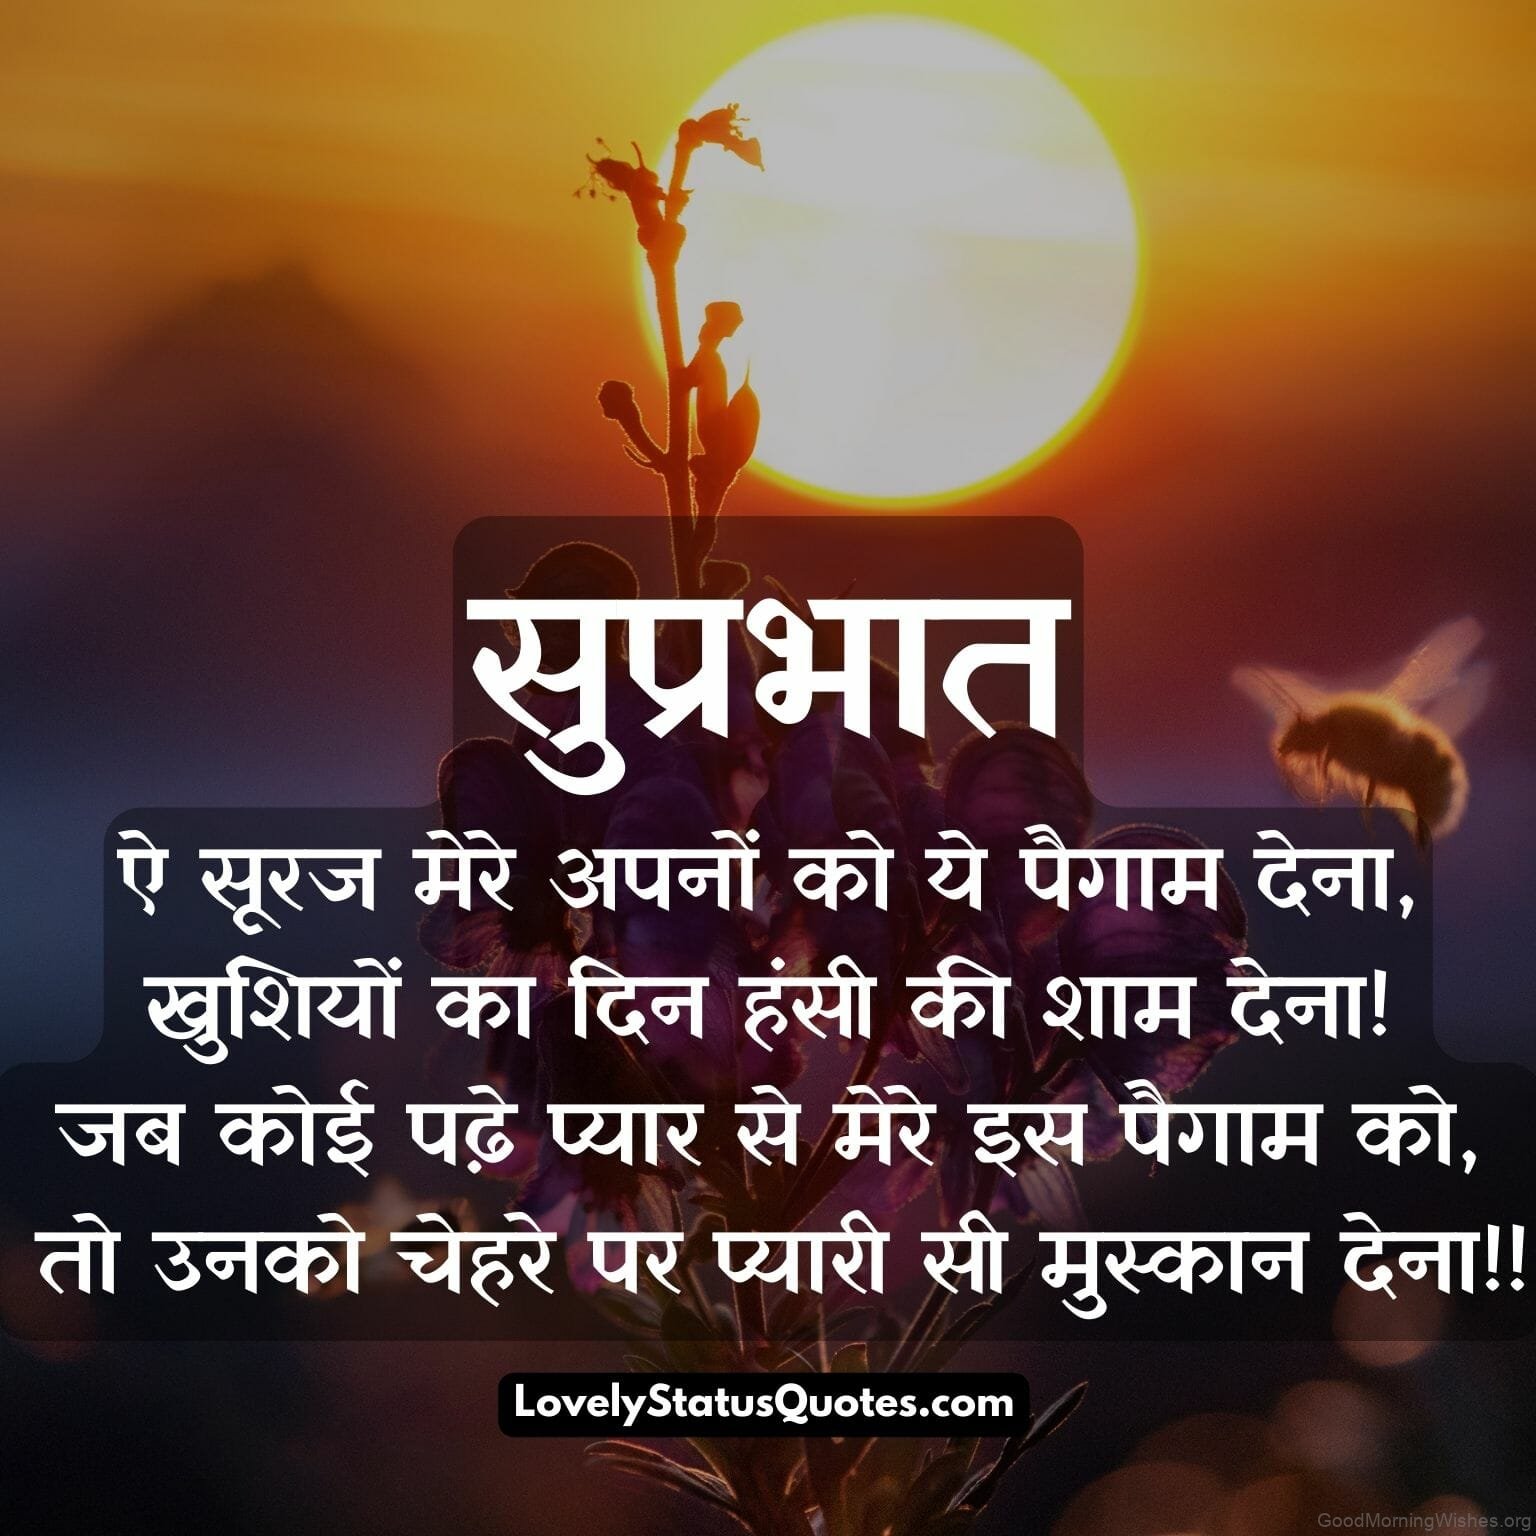 45 Good Morning Hindi Shayari Wishes - Good Morning Wishes